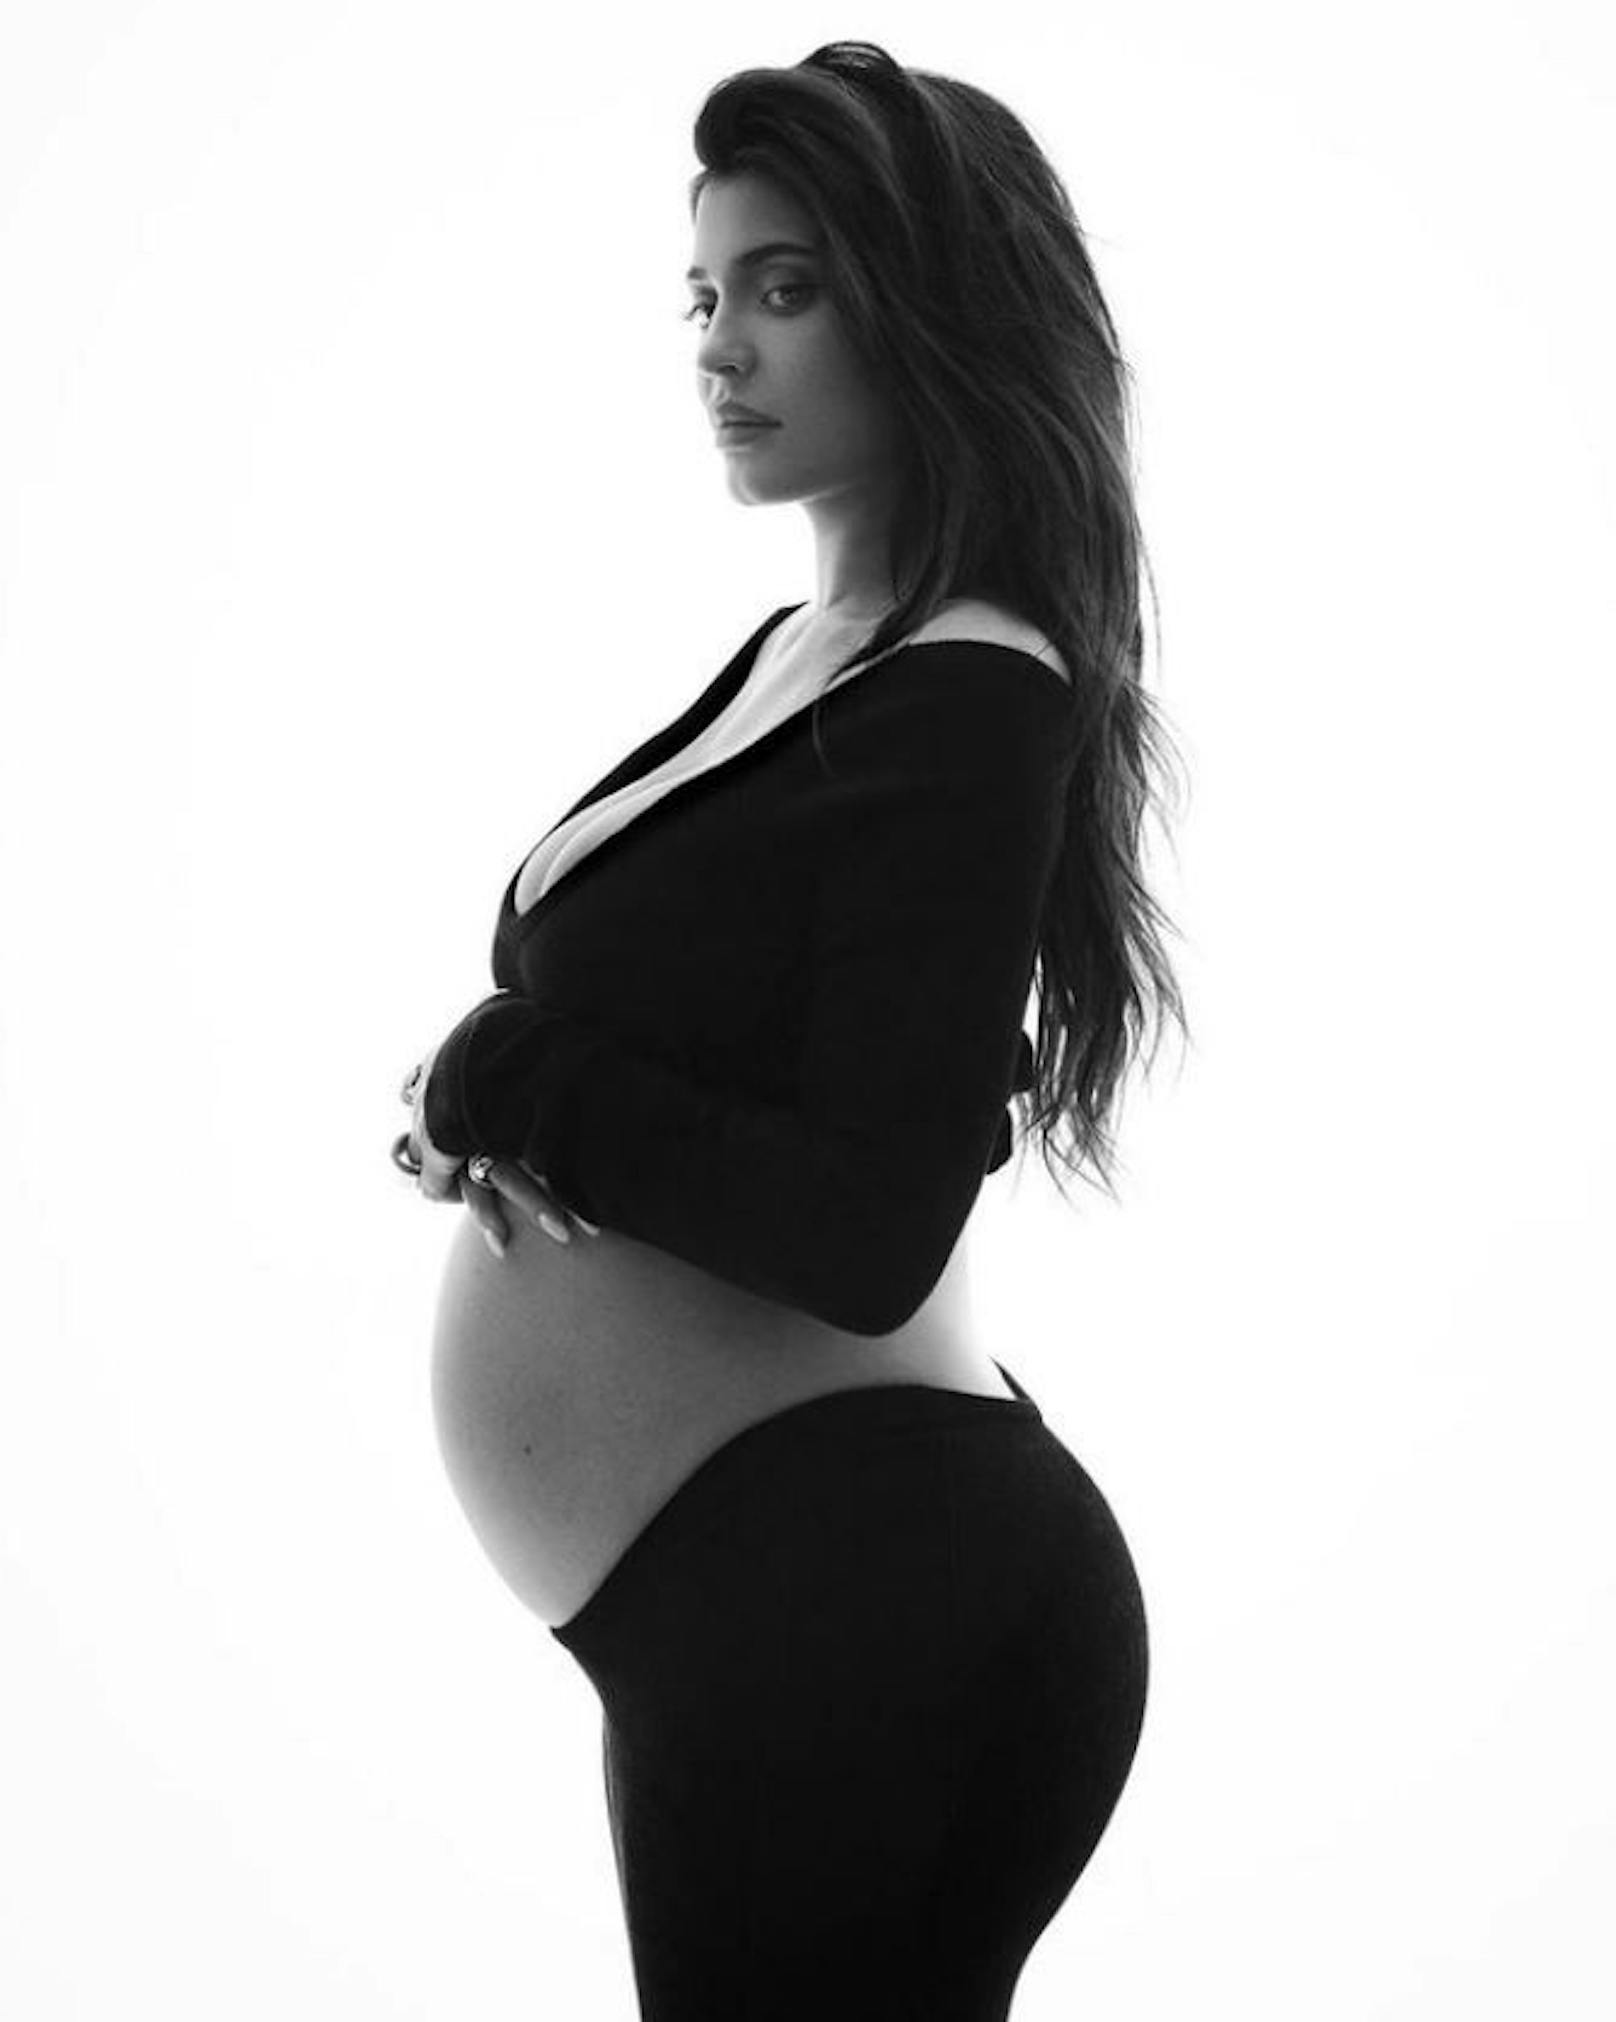 Kylie Jenner erwartet ihr zweites Kind. Auf Insta teilte sie ein neues Babybauch-Foto von sich.